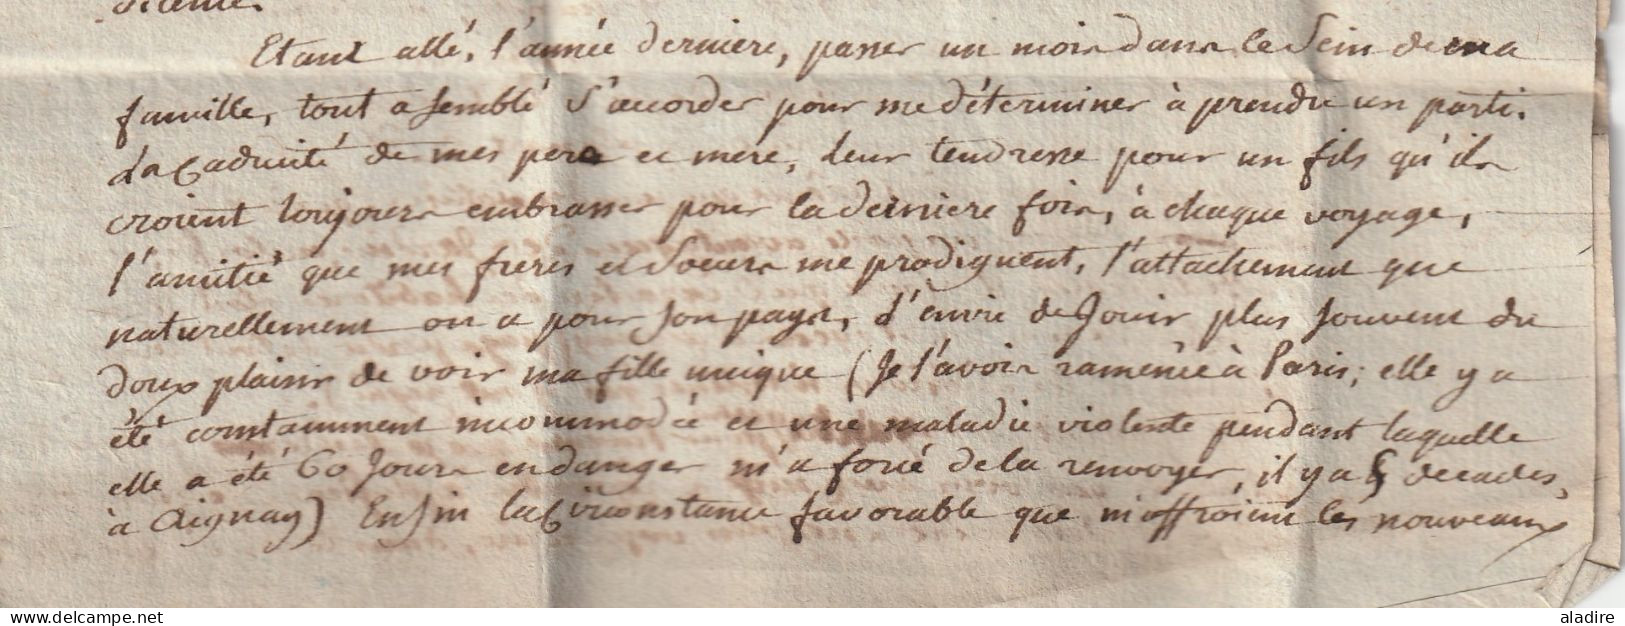 1797 - lettre pliée avec corresp serrée de 3 pages en PORT PAYE de PARIS vers Noyers, Yonne - 1ère République